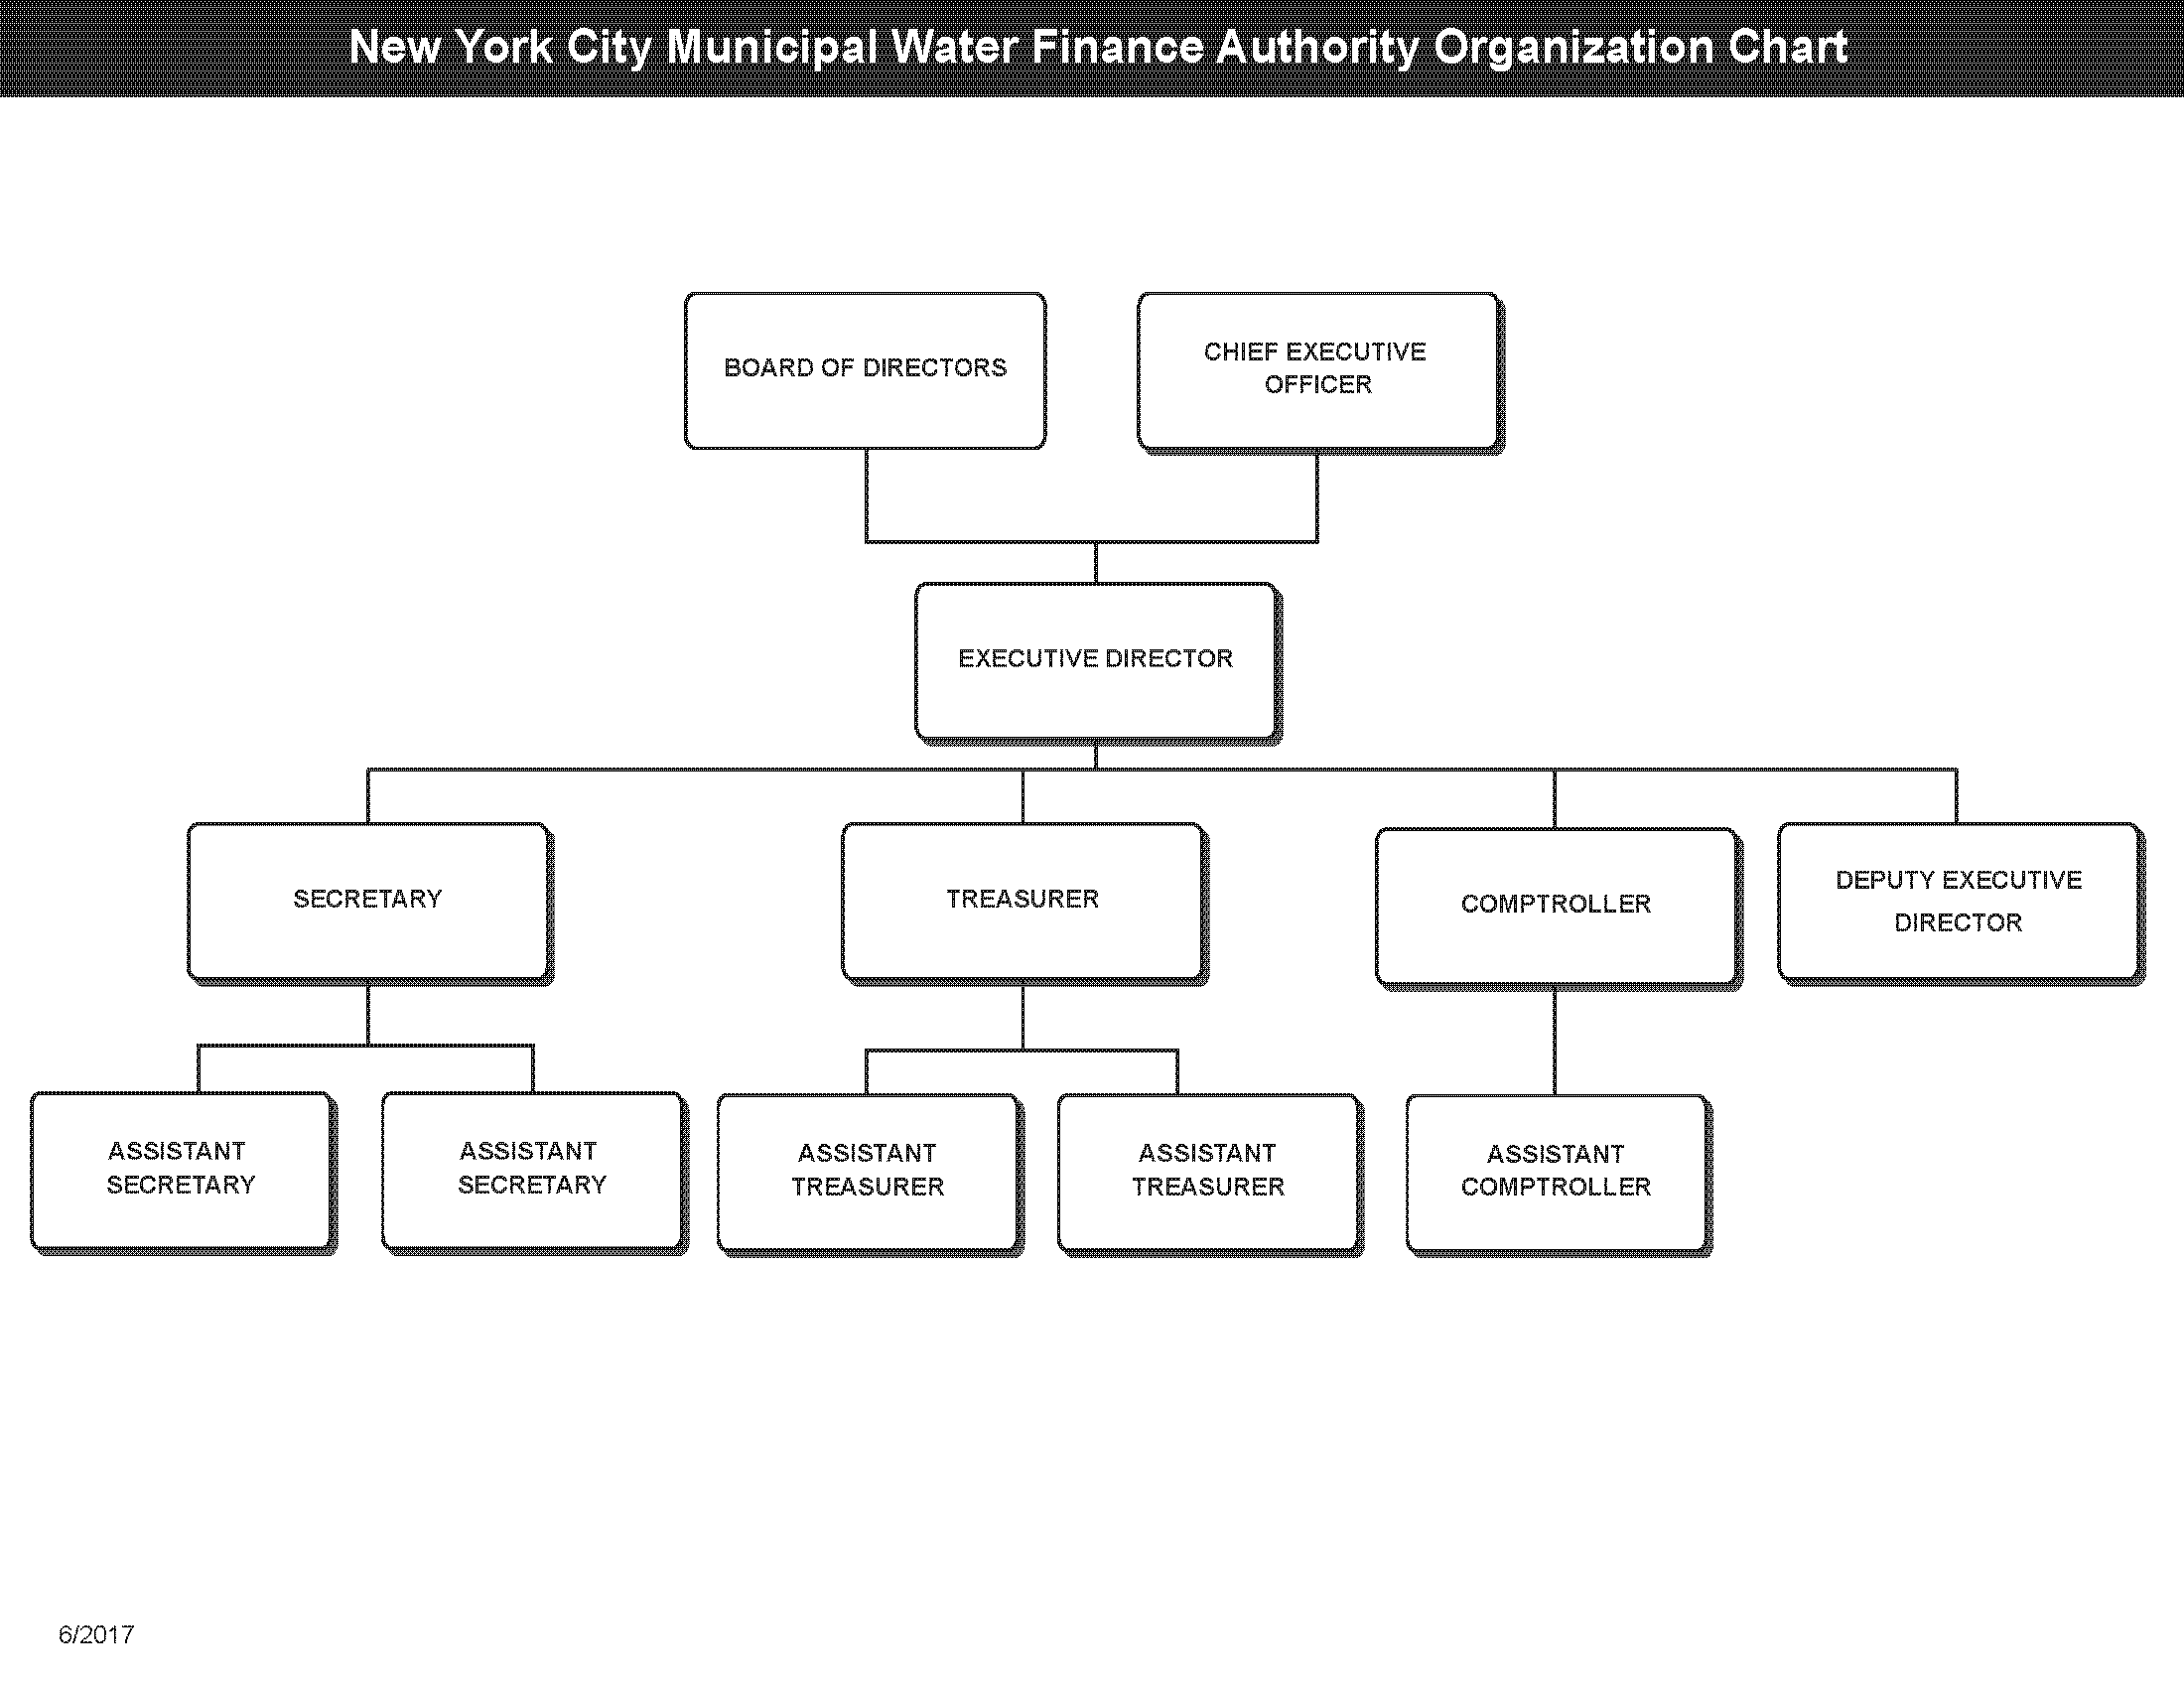 NYW Organization chart